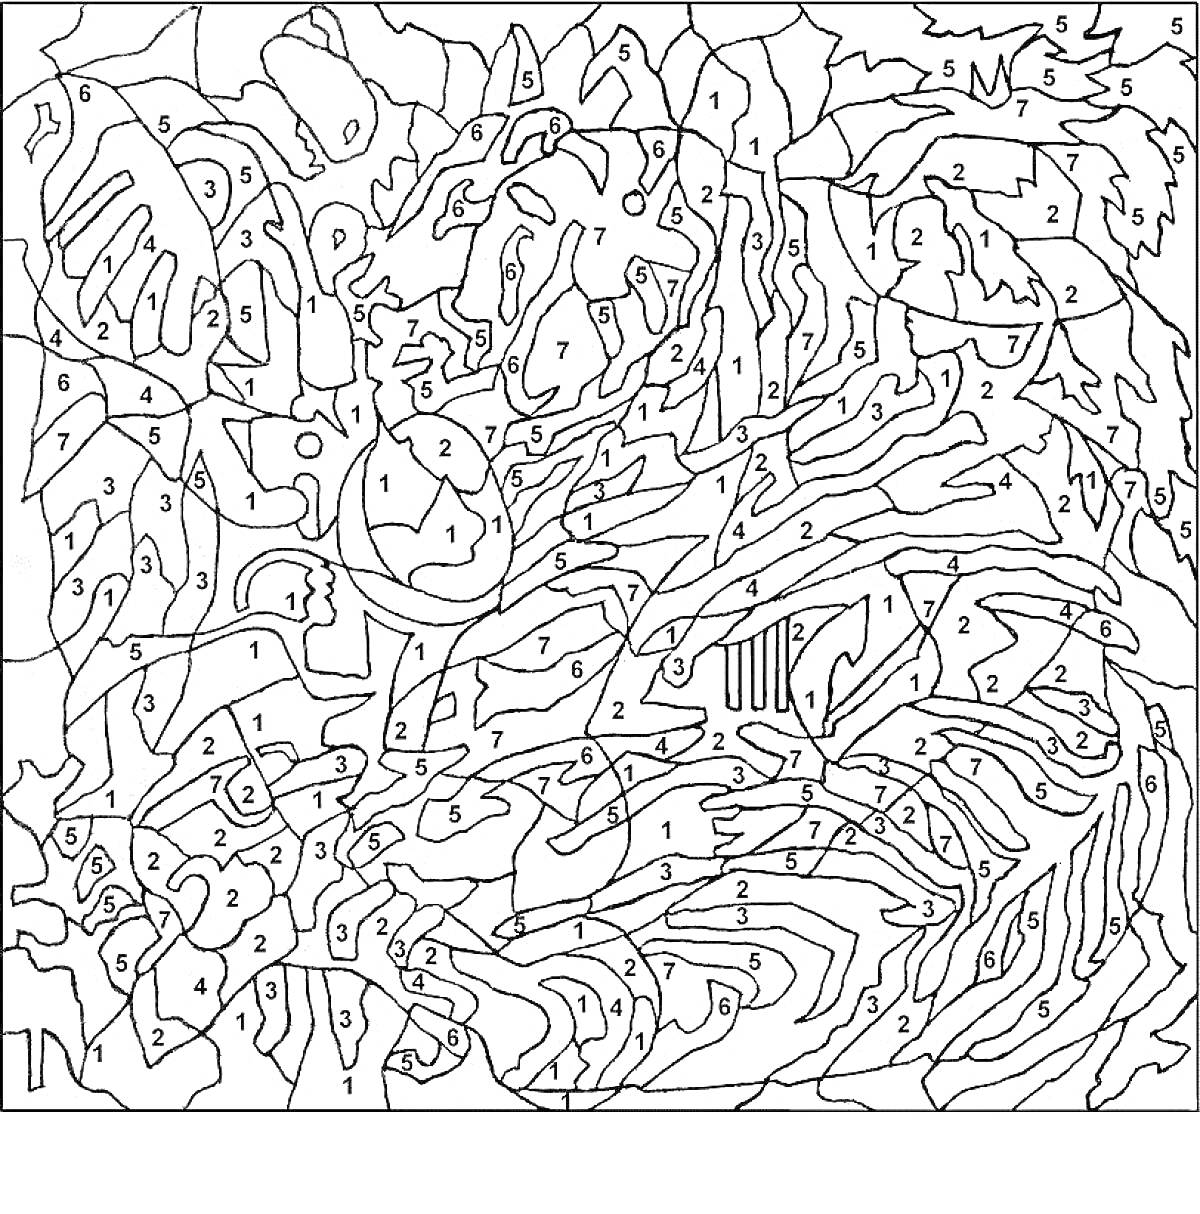 Картина по номерам с многочисленными извилистыми линиями и сегментами, предназначенная для окрашивания по цифрам